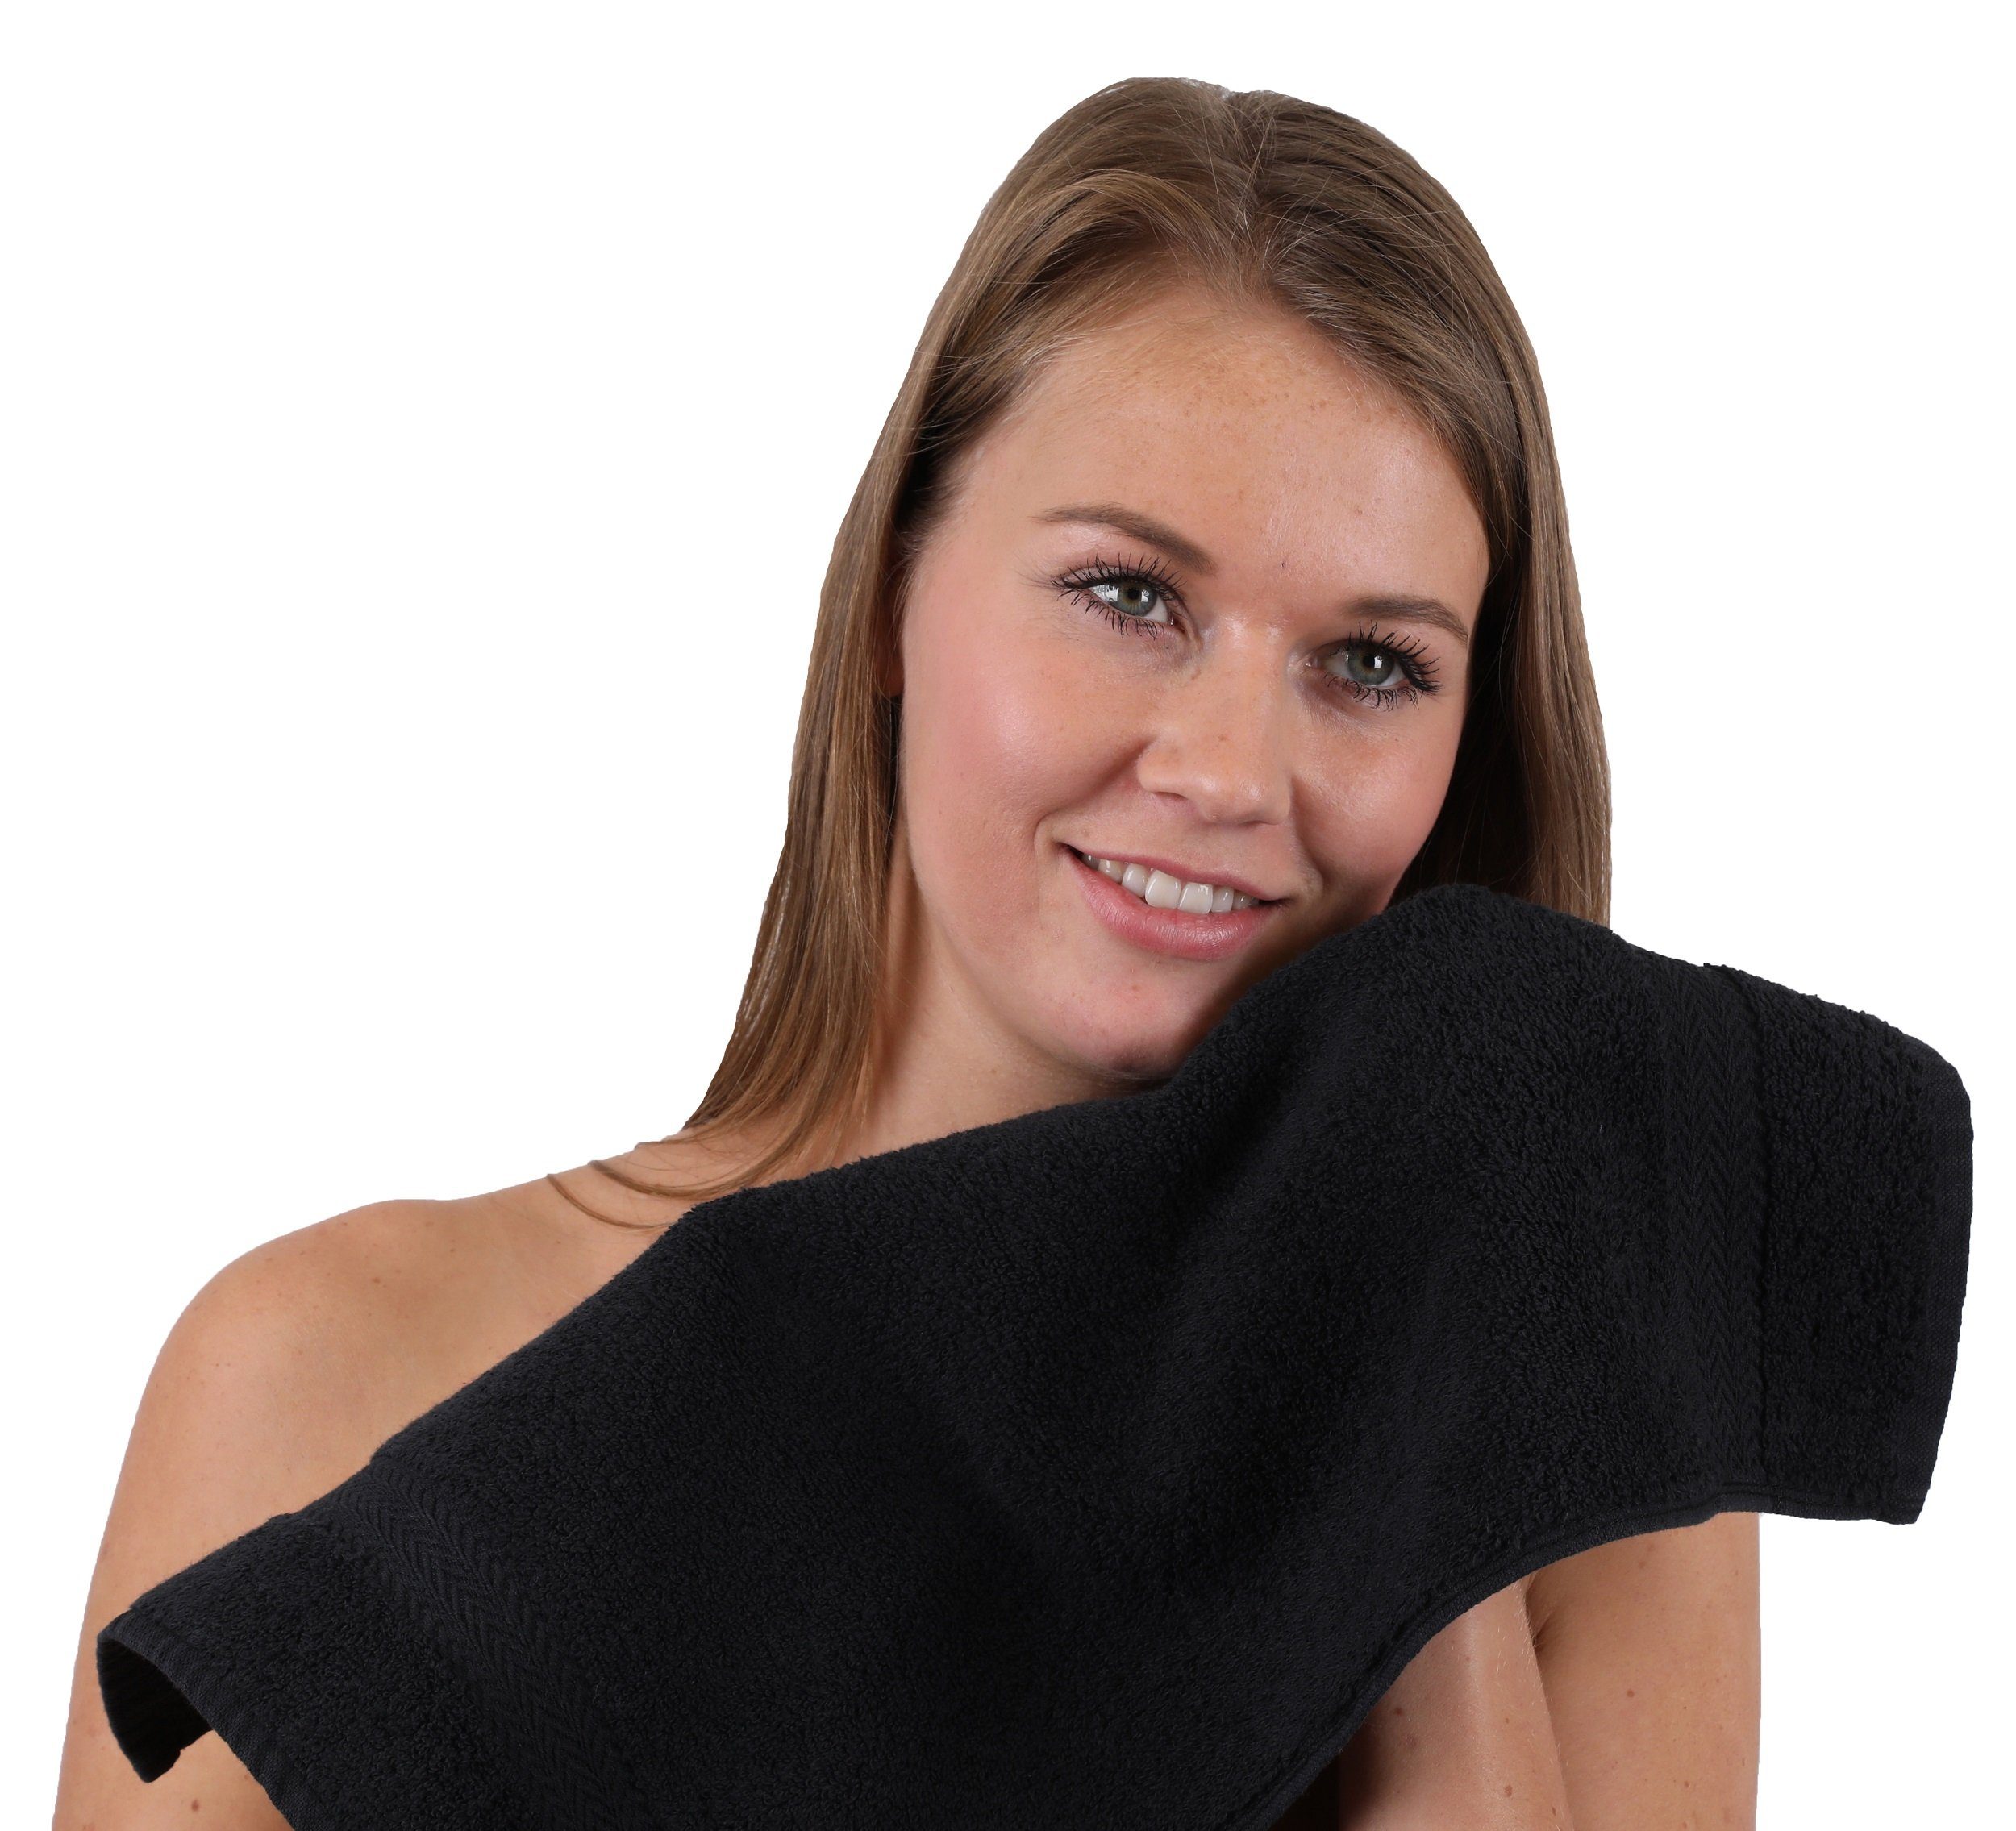 10-TLG. Farbe und Handtuch Classic Baumowlle Dunkelbraun 100% Set schwarz, Betz Handtuch-Set